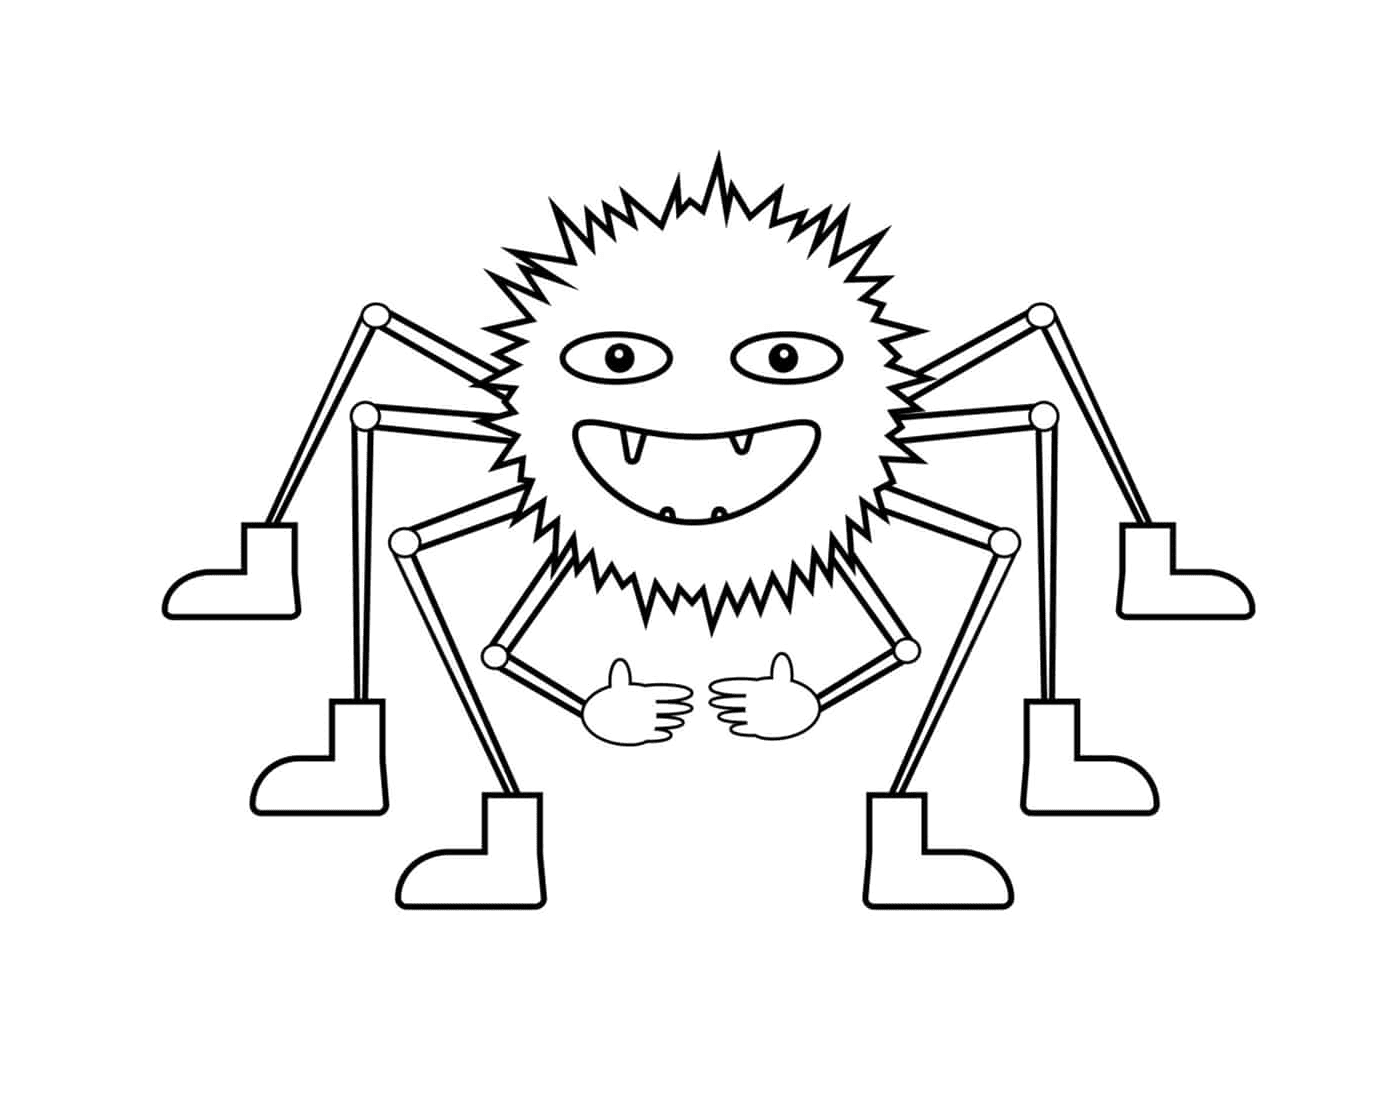   Une araignée avec des pattes multiples 